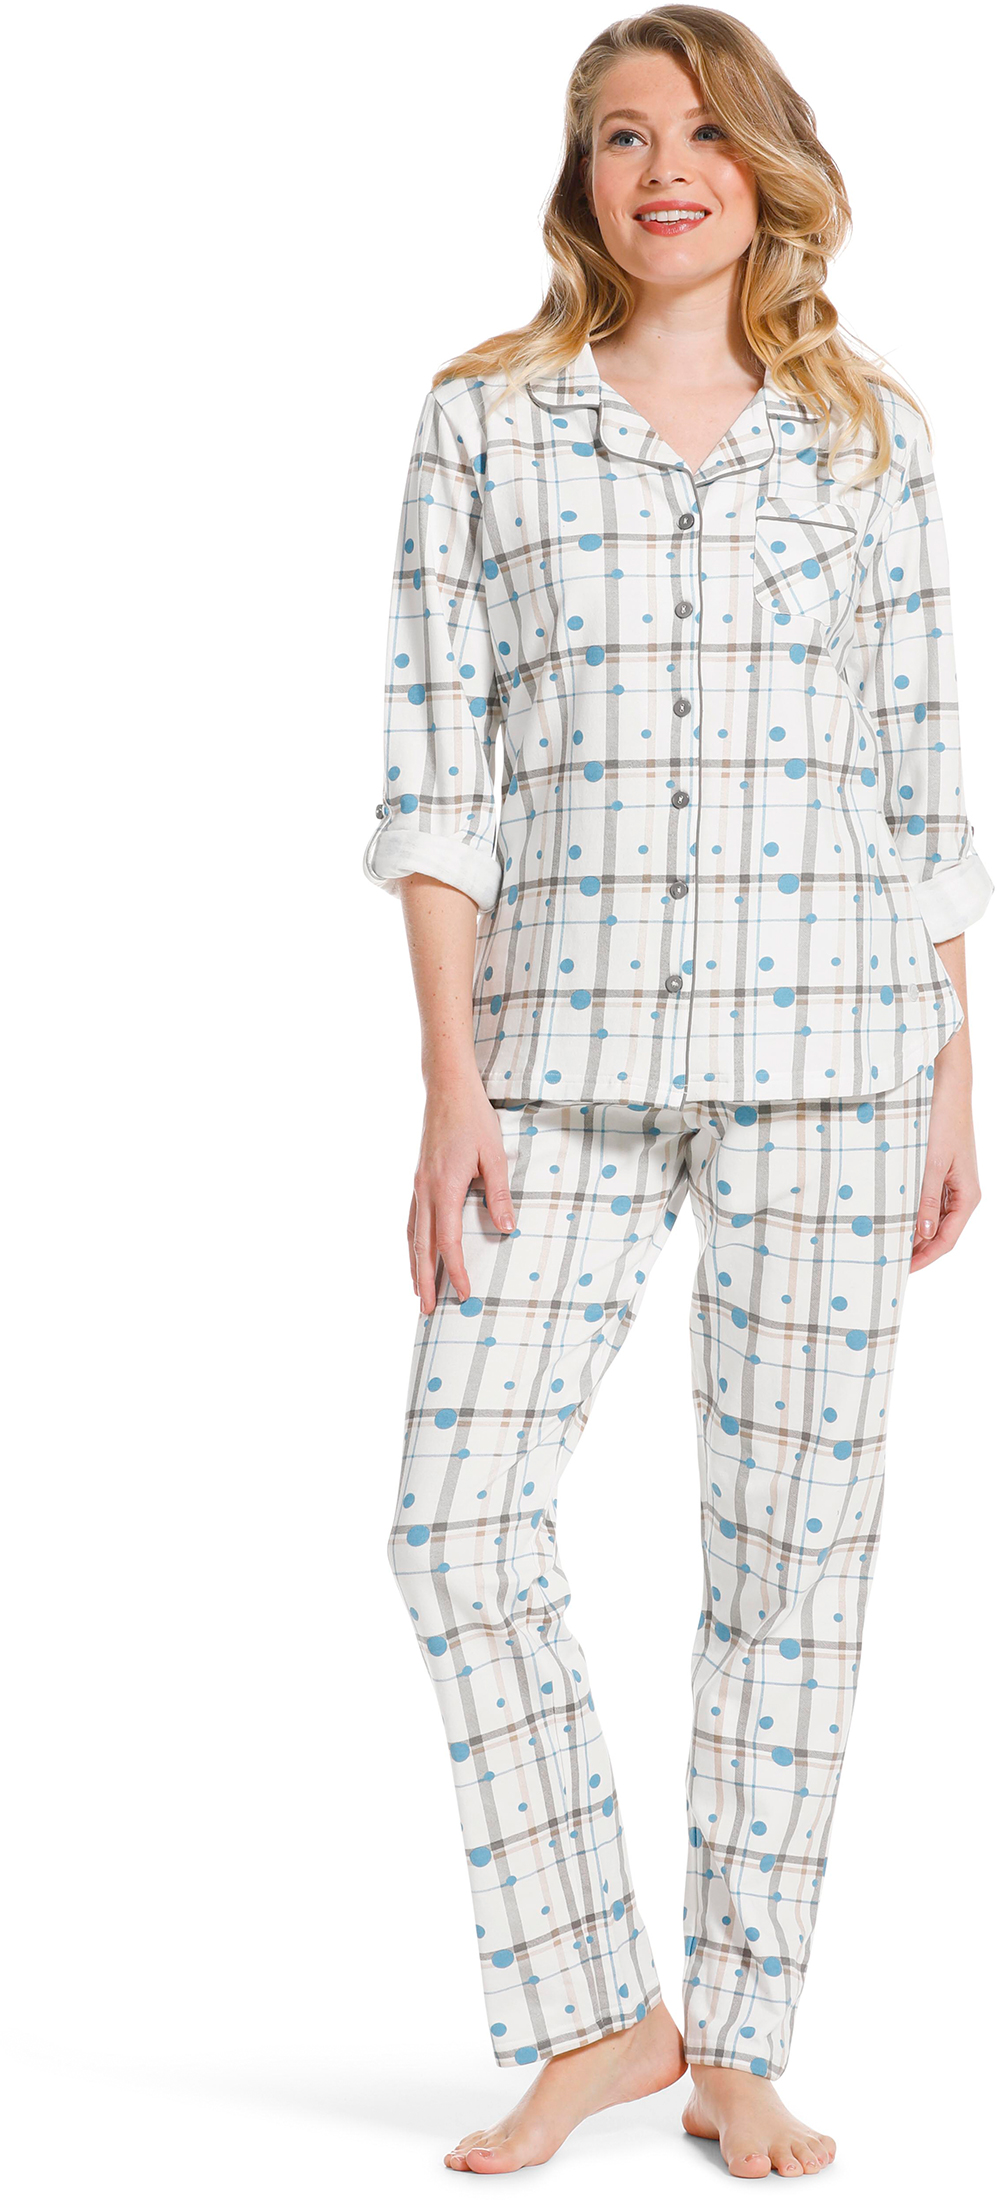 Pastunette dames doorknoop pyjama 20222 142 6 50